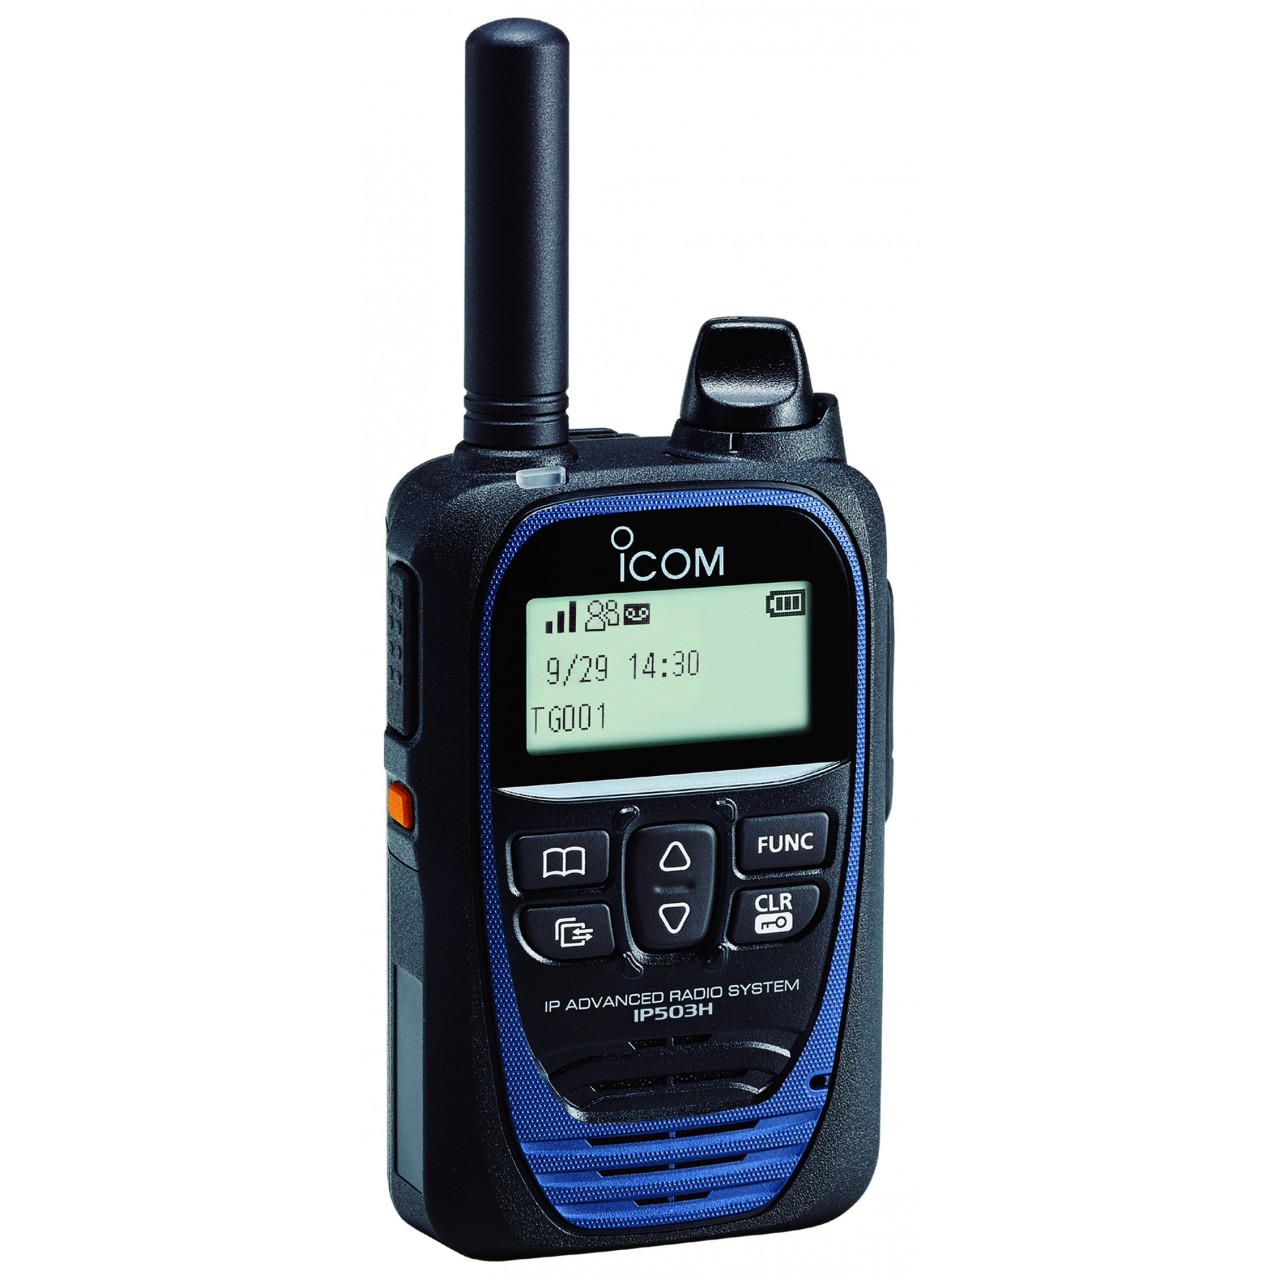 IP503H LITE Handhelds - ICOM